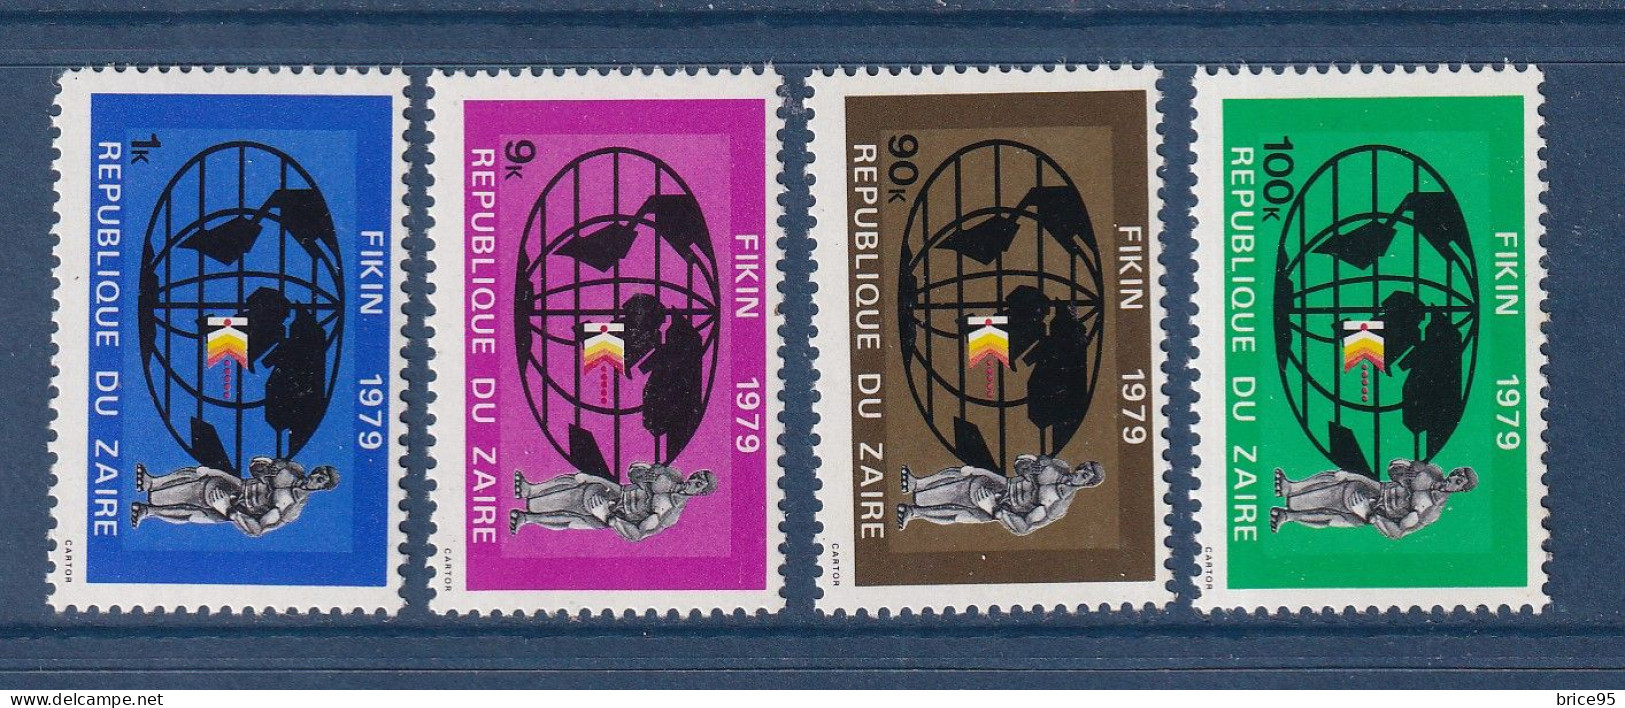 Zaïre - YT N° 957 à 960 ** - Neuf Sans Charnière - 1979 - Unused Stamps